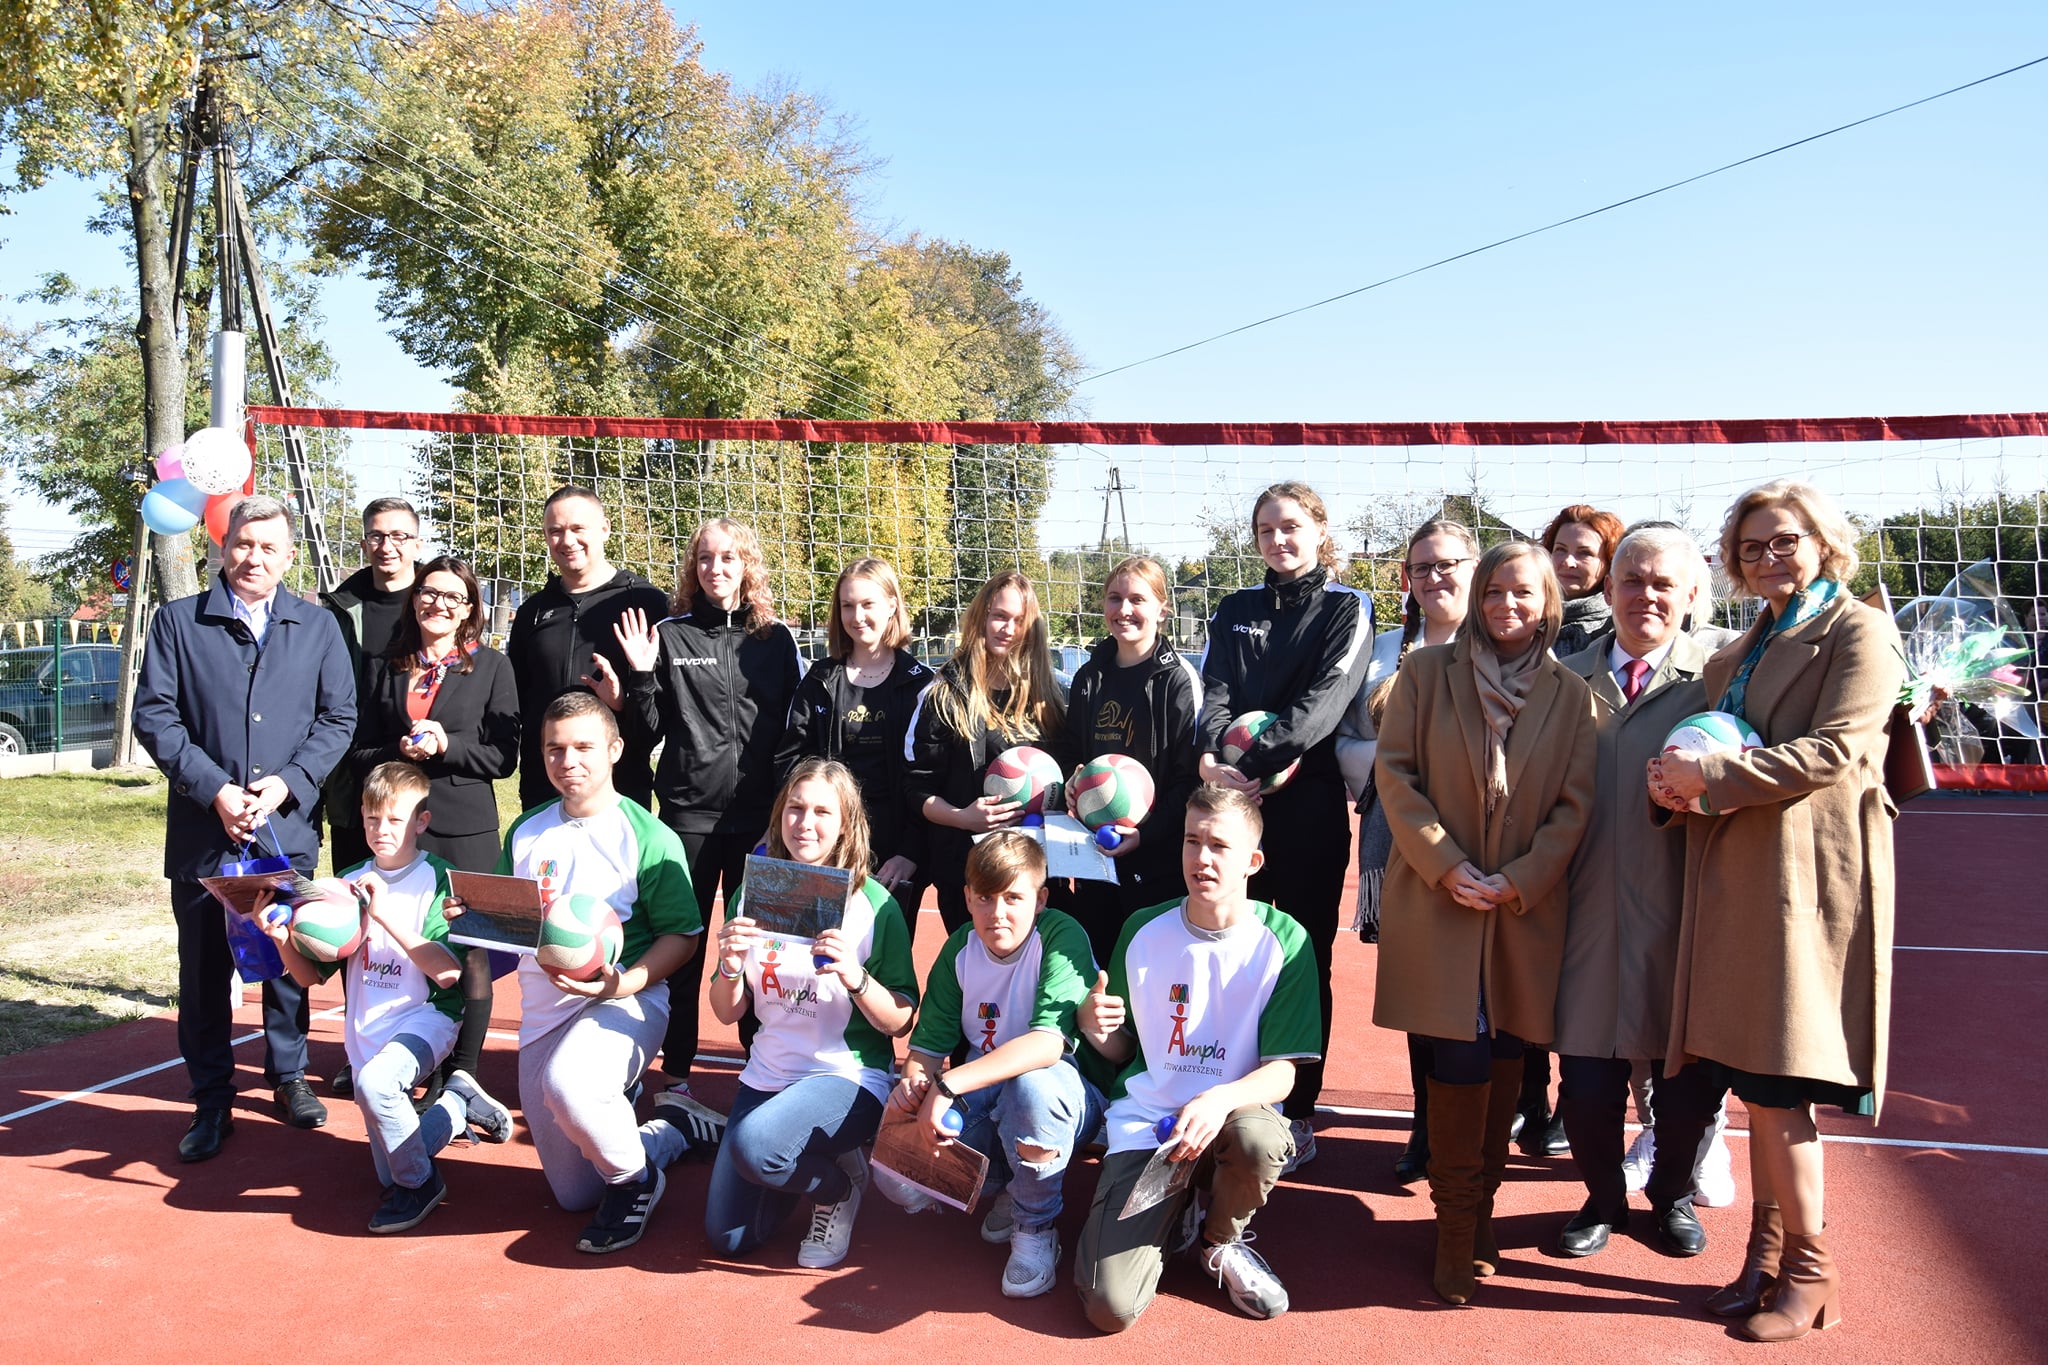 Grupowe zdjęcie. Kucają wychowankowie Specjalnego Ośrodka Szkolno-Wychowawczego w Jońcu, za nimi drużyna siatkarska, po prawej i lewej stronie zaproszeni goście.